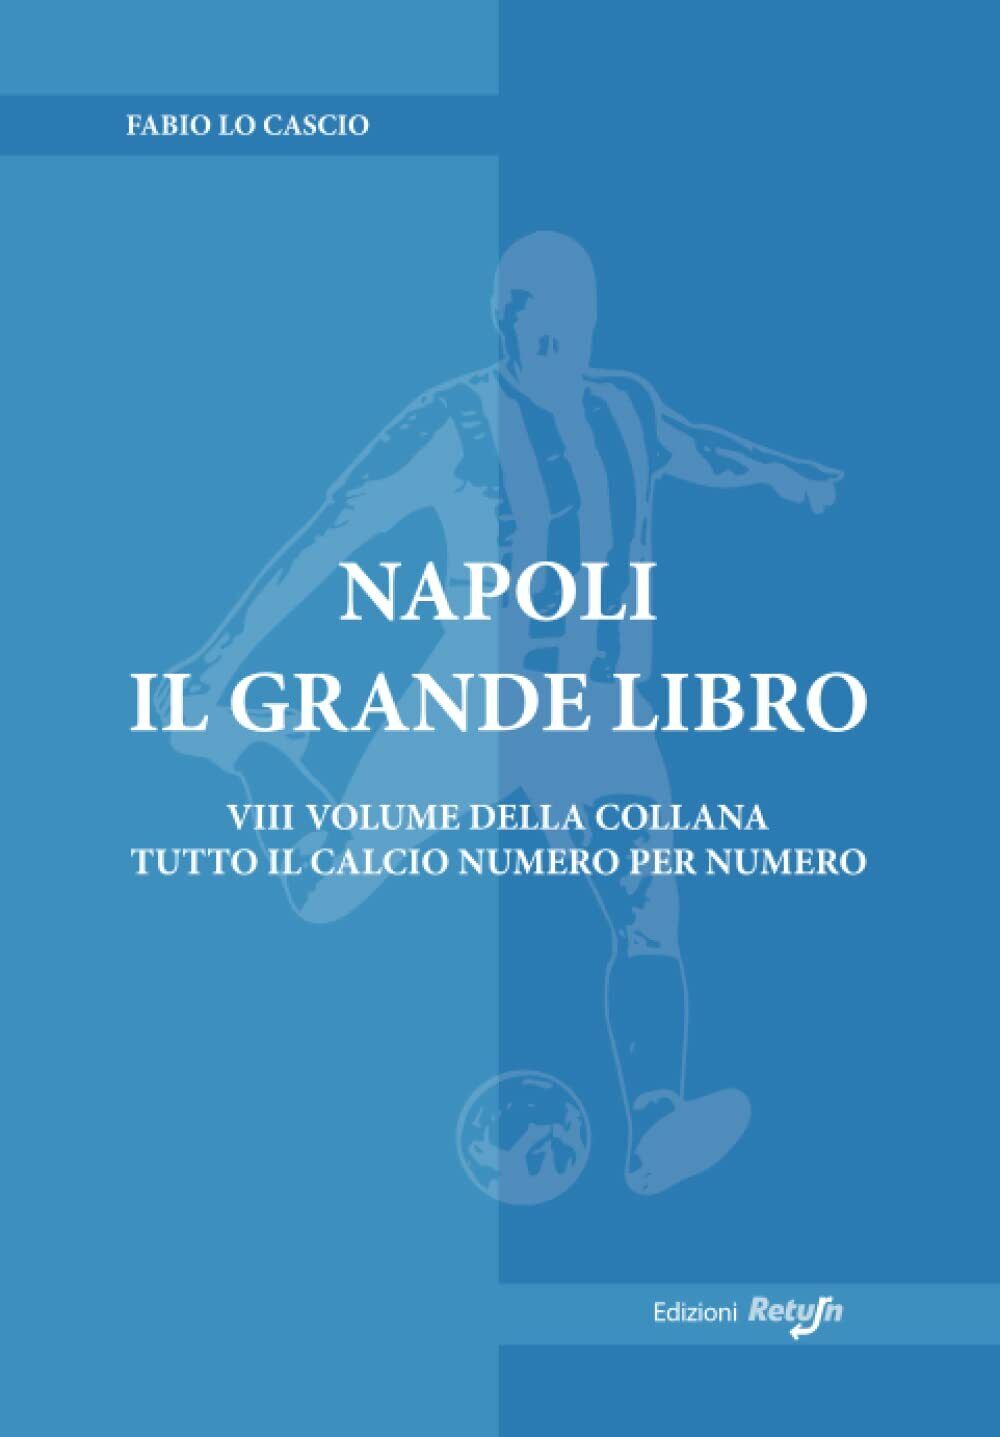 Napoli il Grande Libro - Fabio Lo Cascio - Return, 2019 libro usato